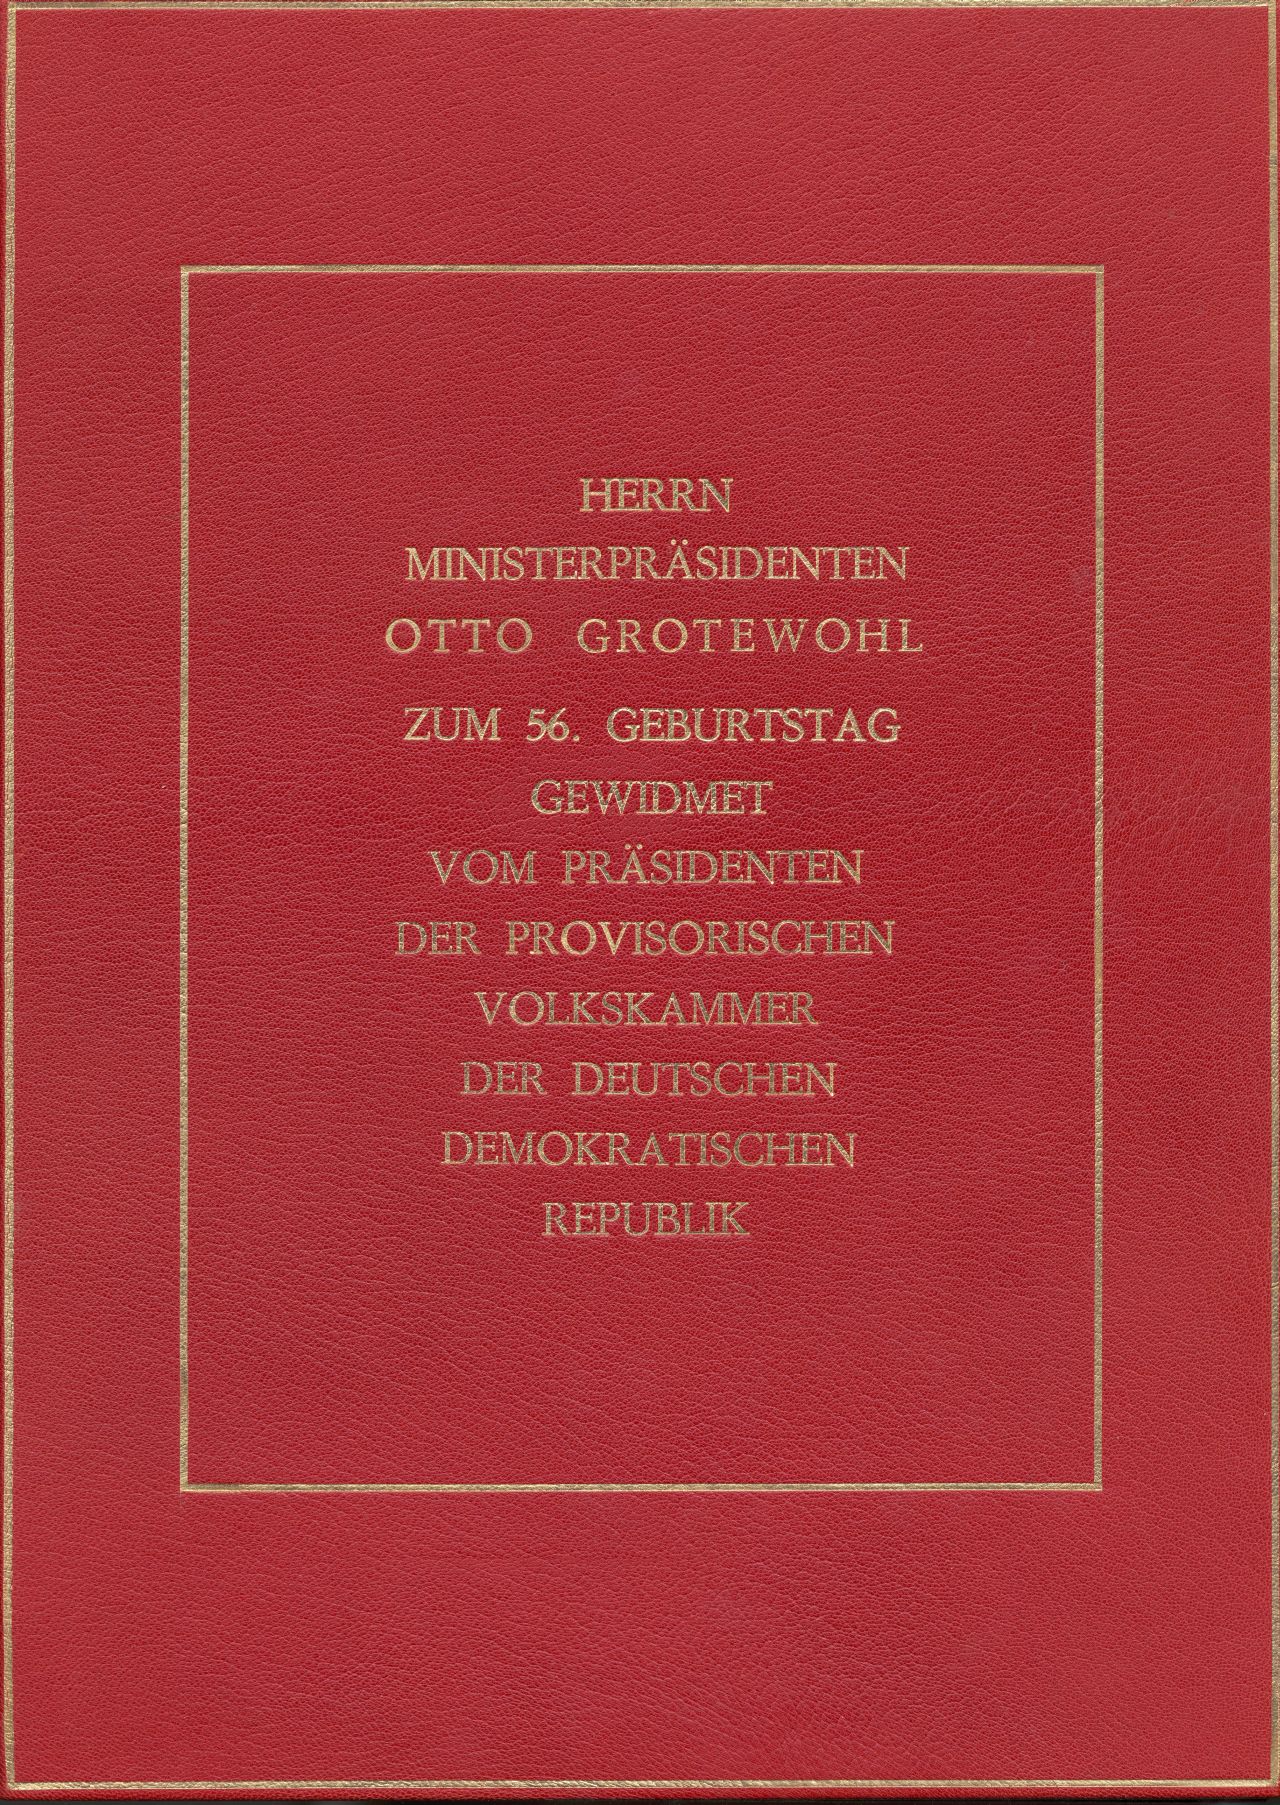 Verfassung der DDR, gewidmet dem Ministerpräsidenten Otto Grotewohl